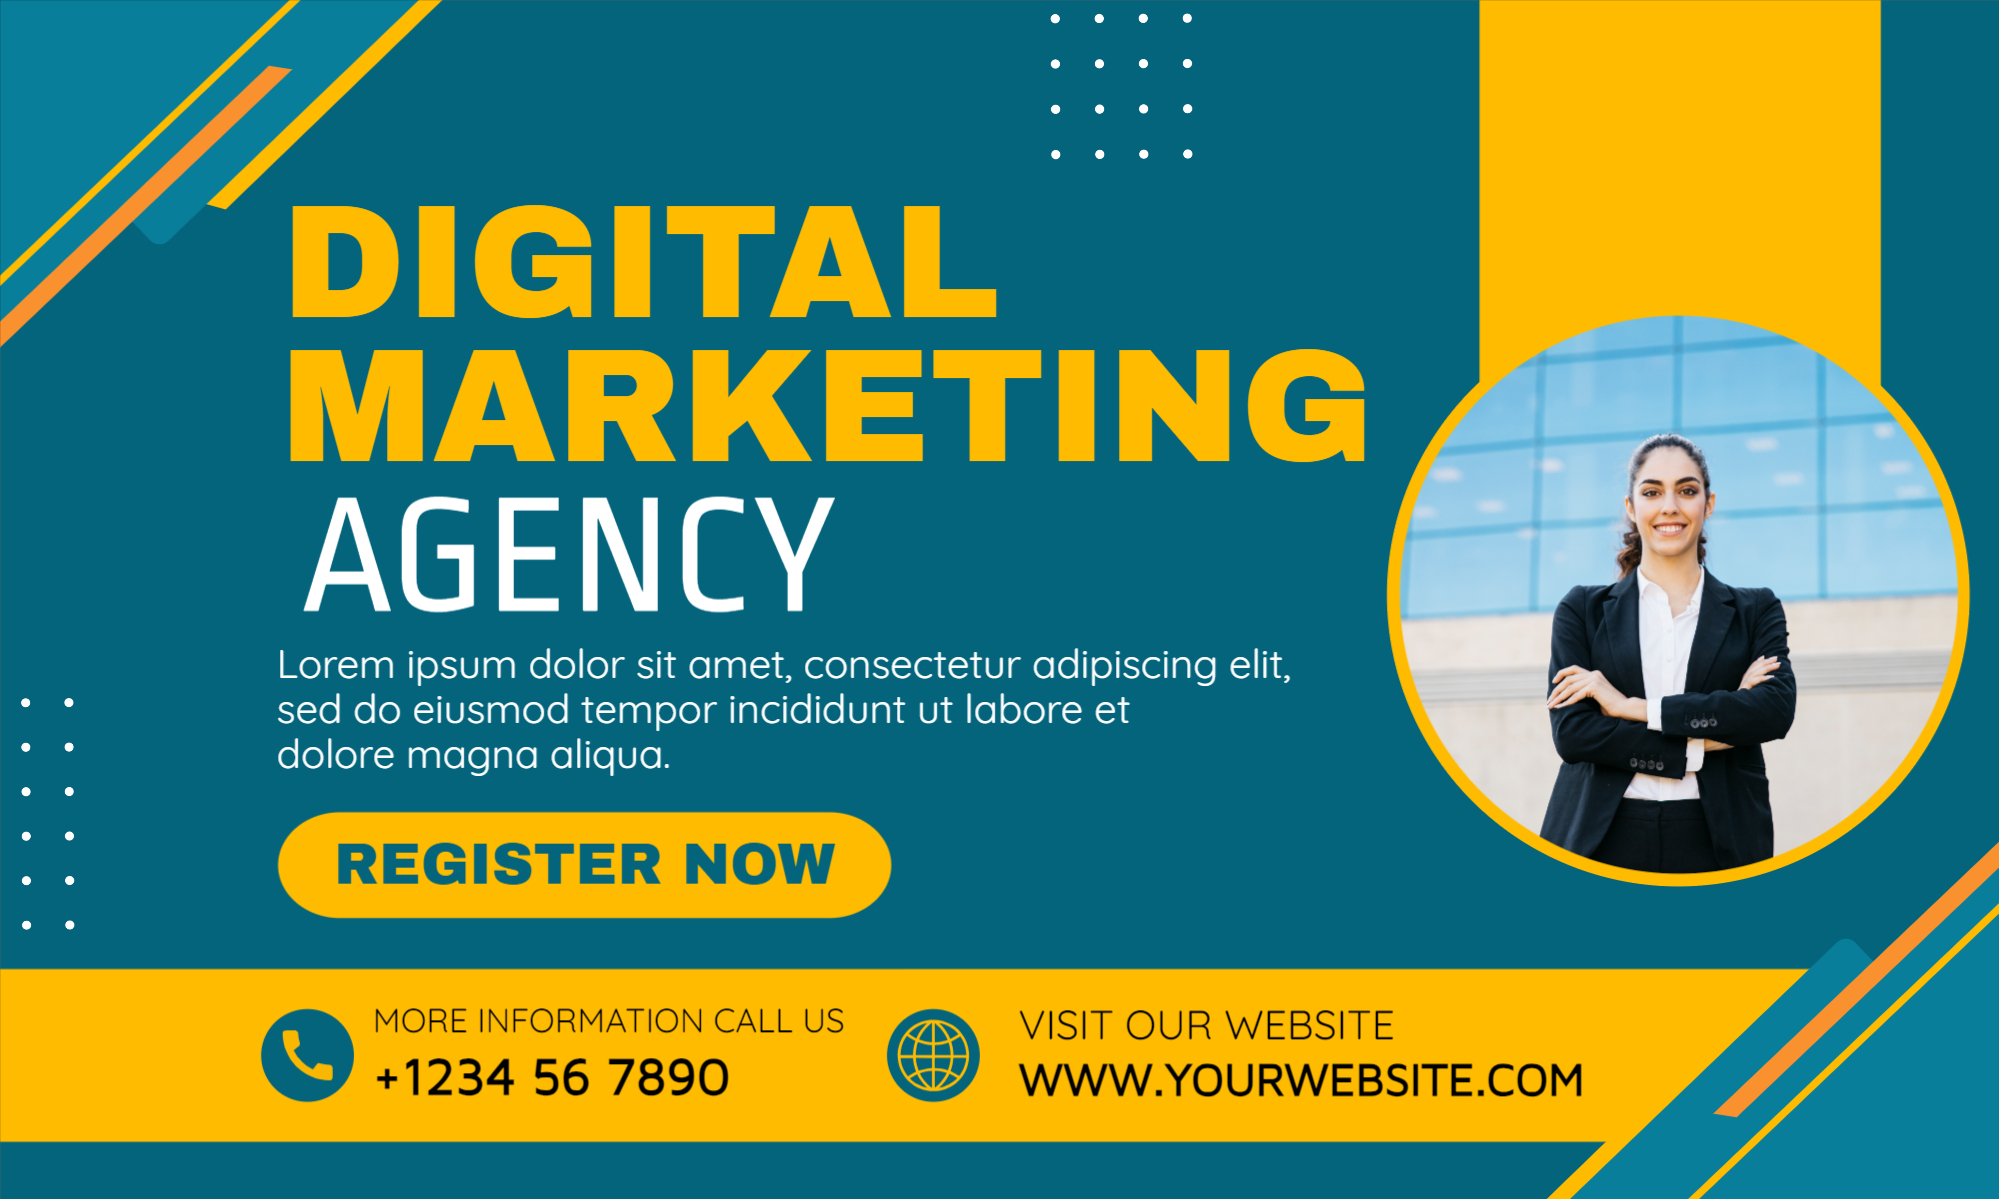  Digital Marketing Agency Banner design download for free